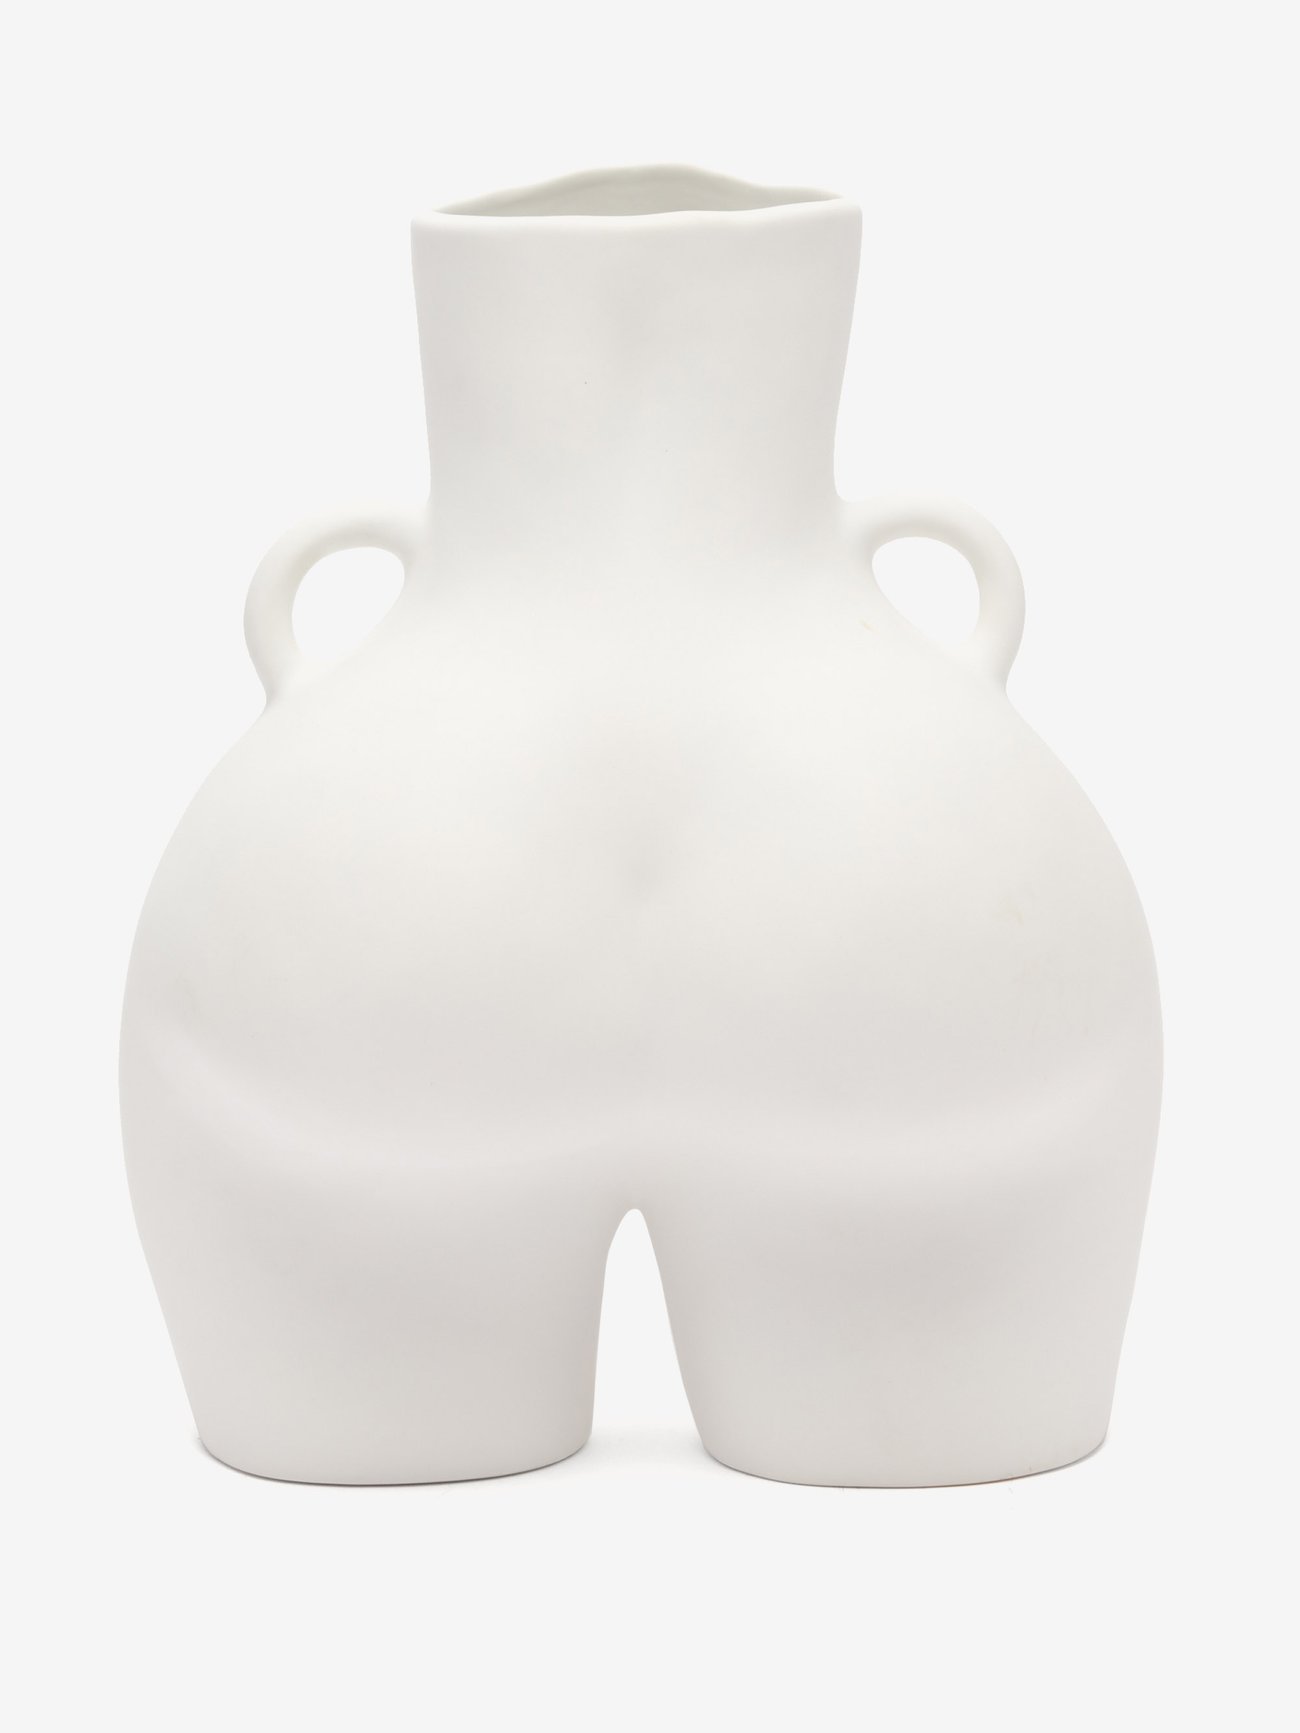 Anissa Kermiche Anissa Kermiche Love Handles ceramic vase White 